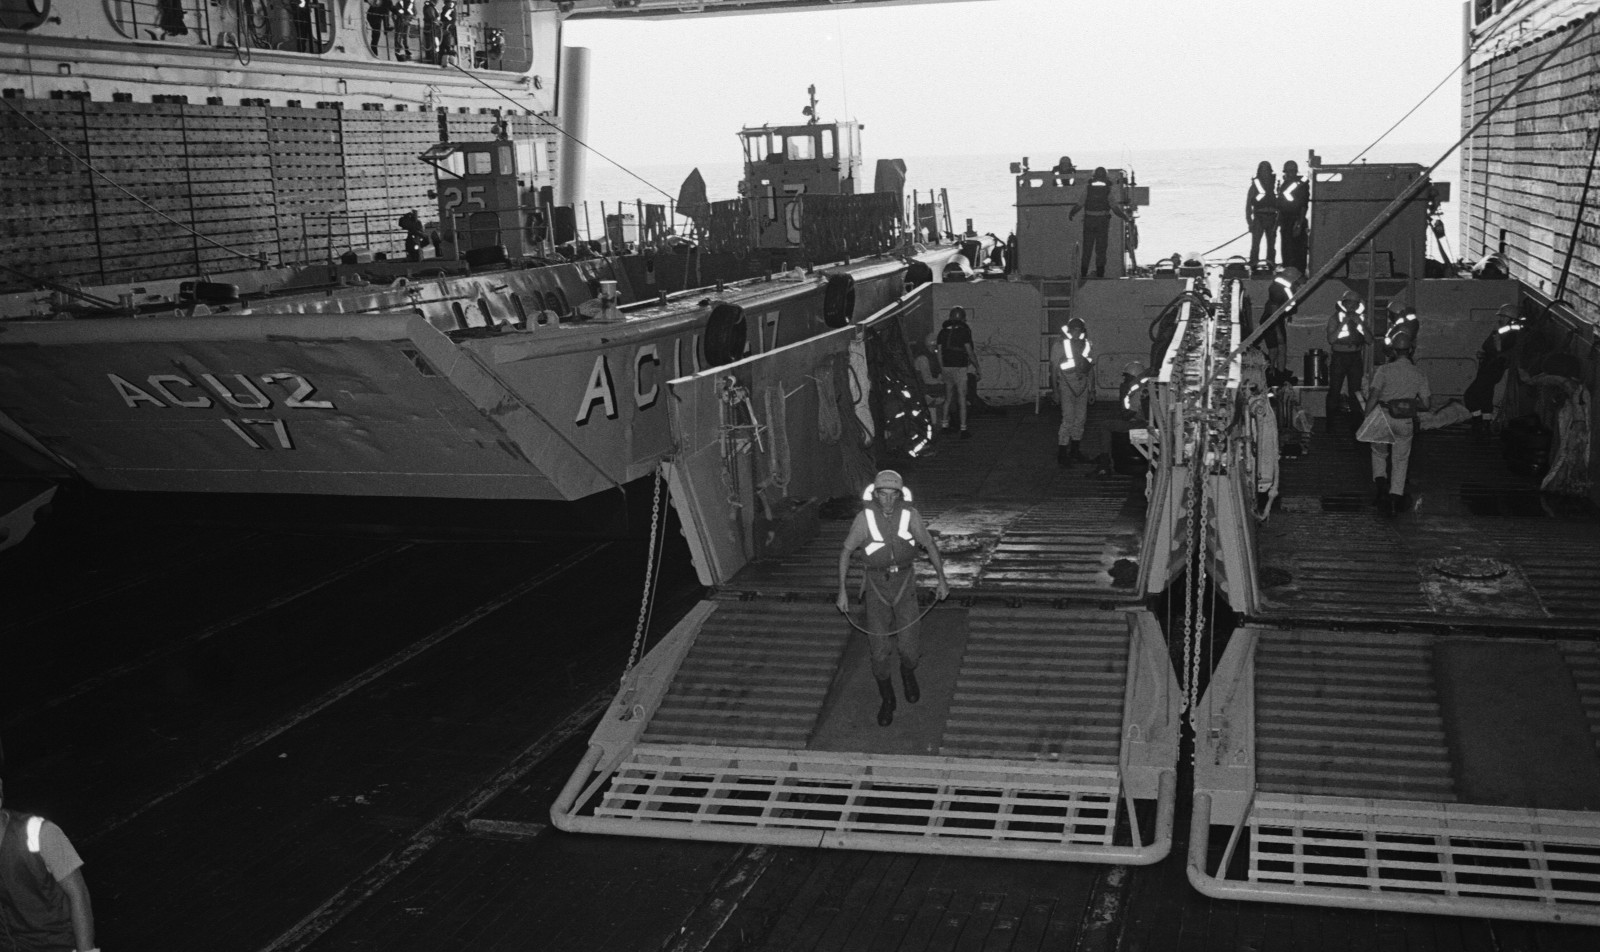 lha-4 uss nassau tarawa class amphibious assault ship us navy 118 well deck